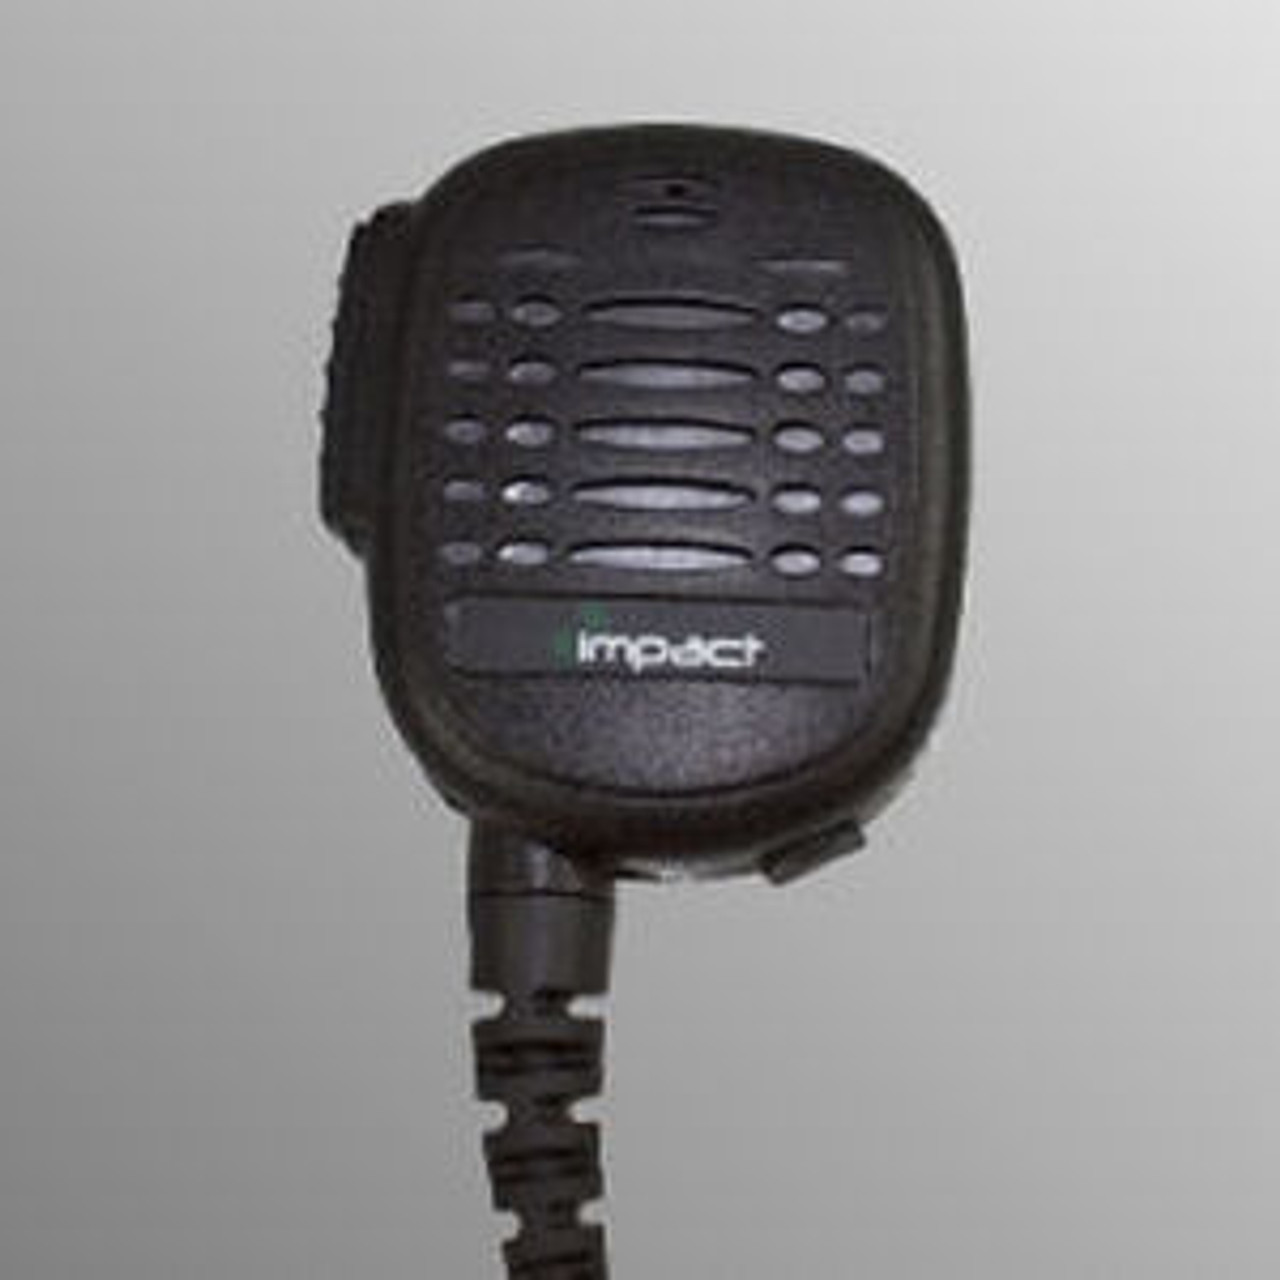 Harris P7200 Noise Canceling Speaker Mic.